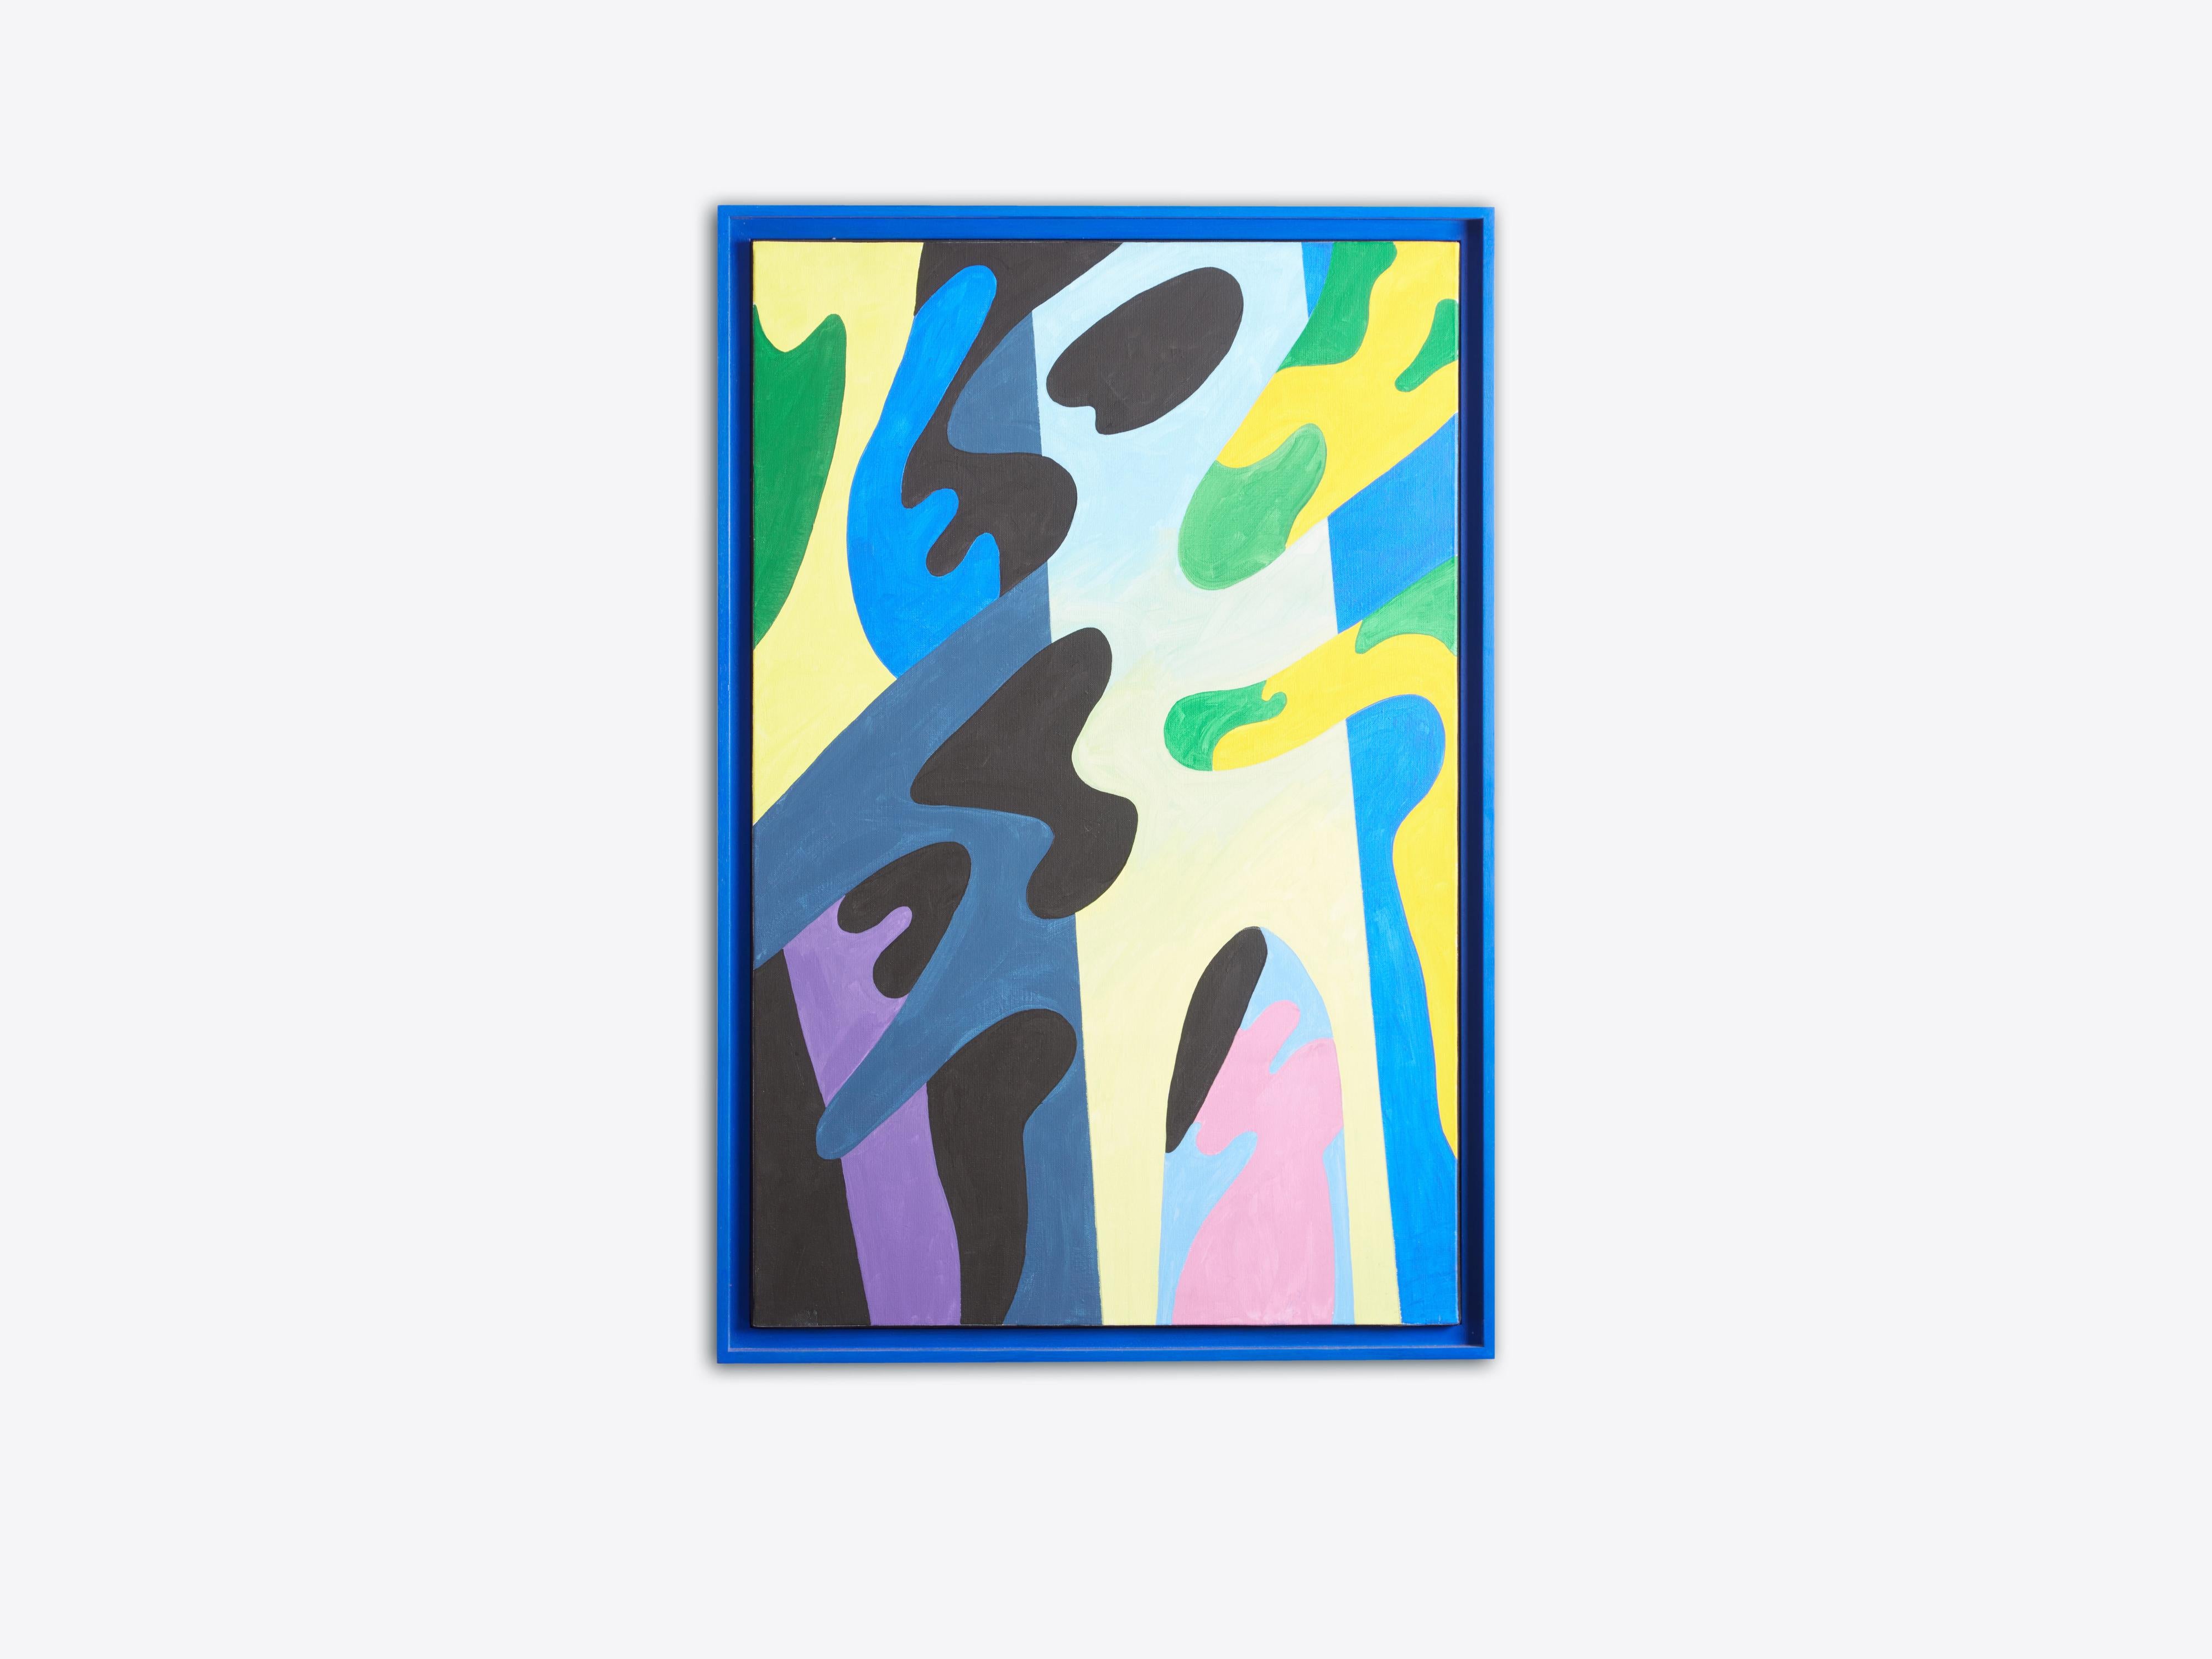 Precioso y juguetón óleo sobre lienzo del artista francés Guy de Rougemont, firmado Rougemont y fechado en 2006 en el reverso. Se ha enmarcado con una caja de sombra azul real a juego con los colores del cuadro. El tamaño del lienzo es Alto 36,25